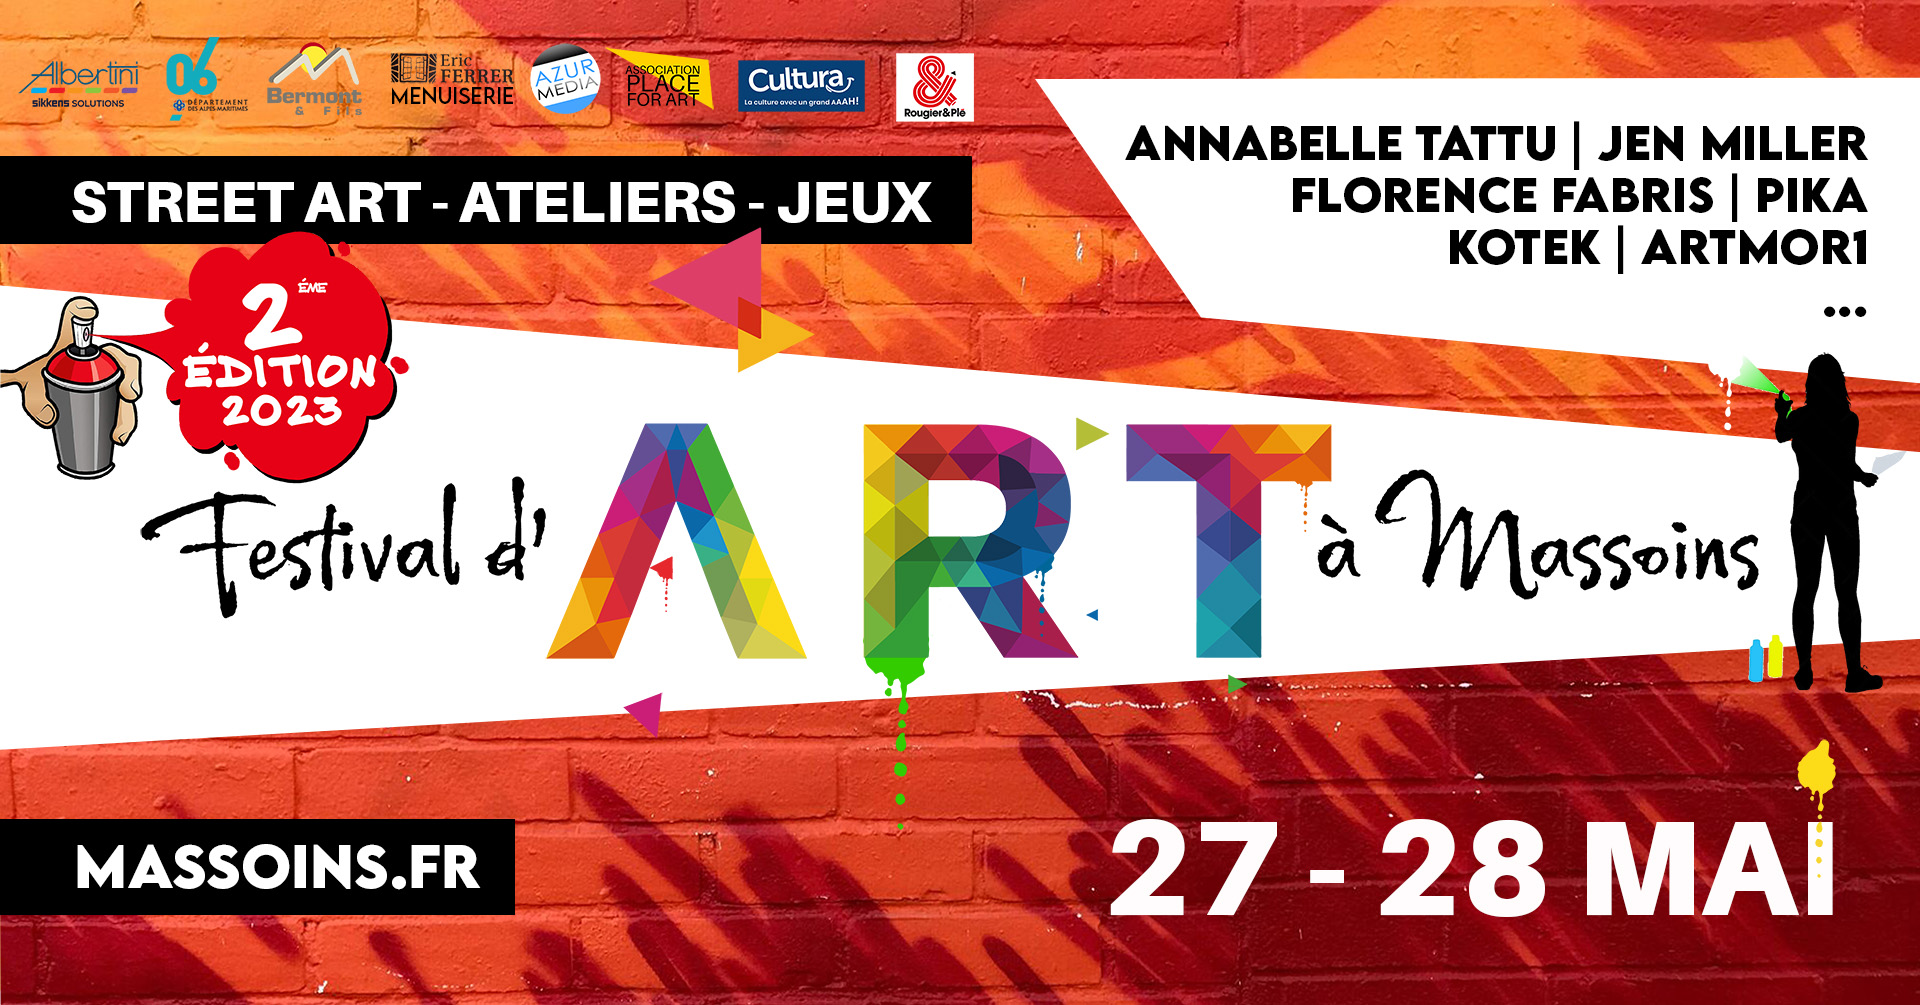 Phénomèn'art », un festival pour découvrir le 94 et Paris côté street art